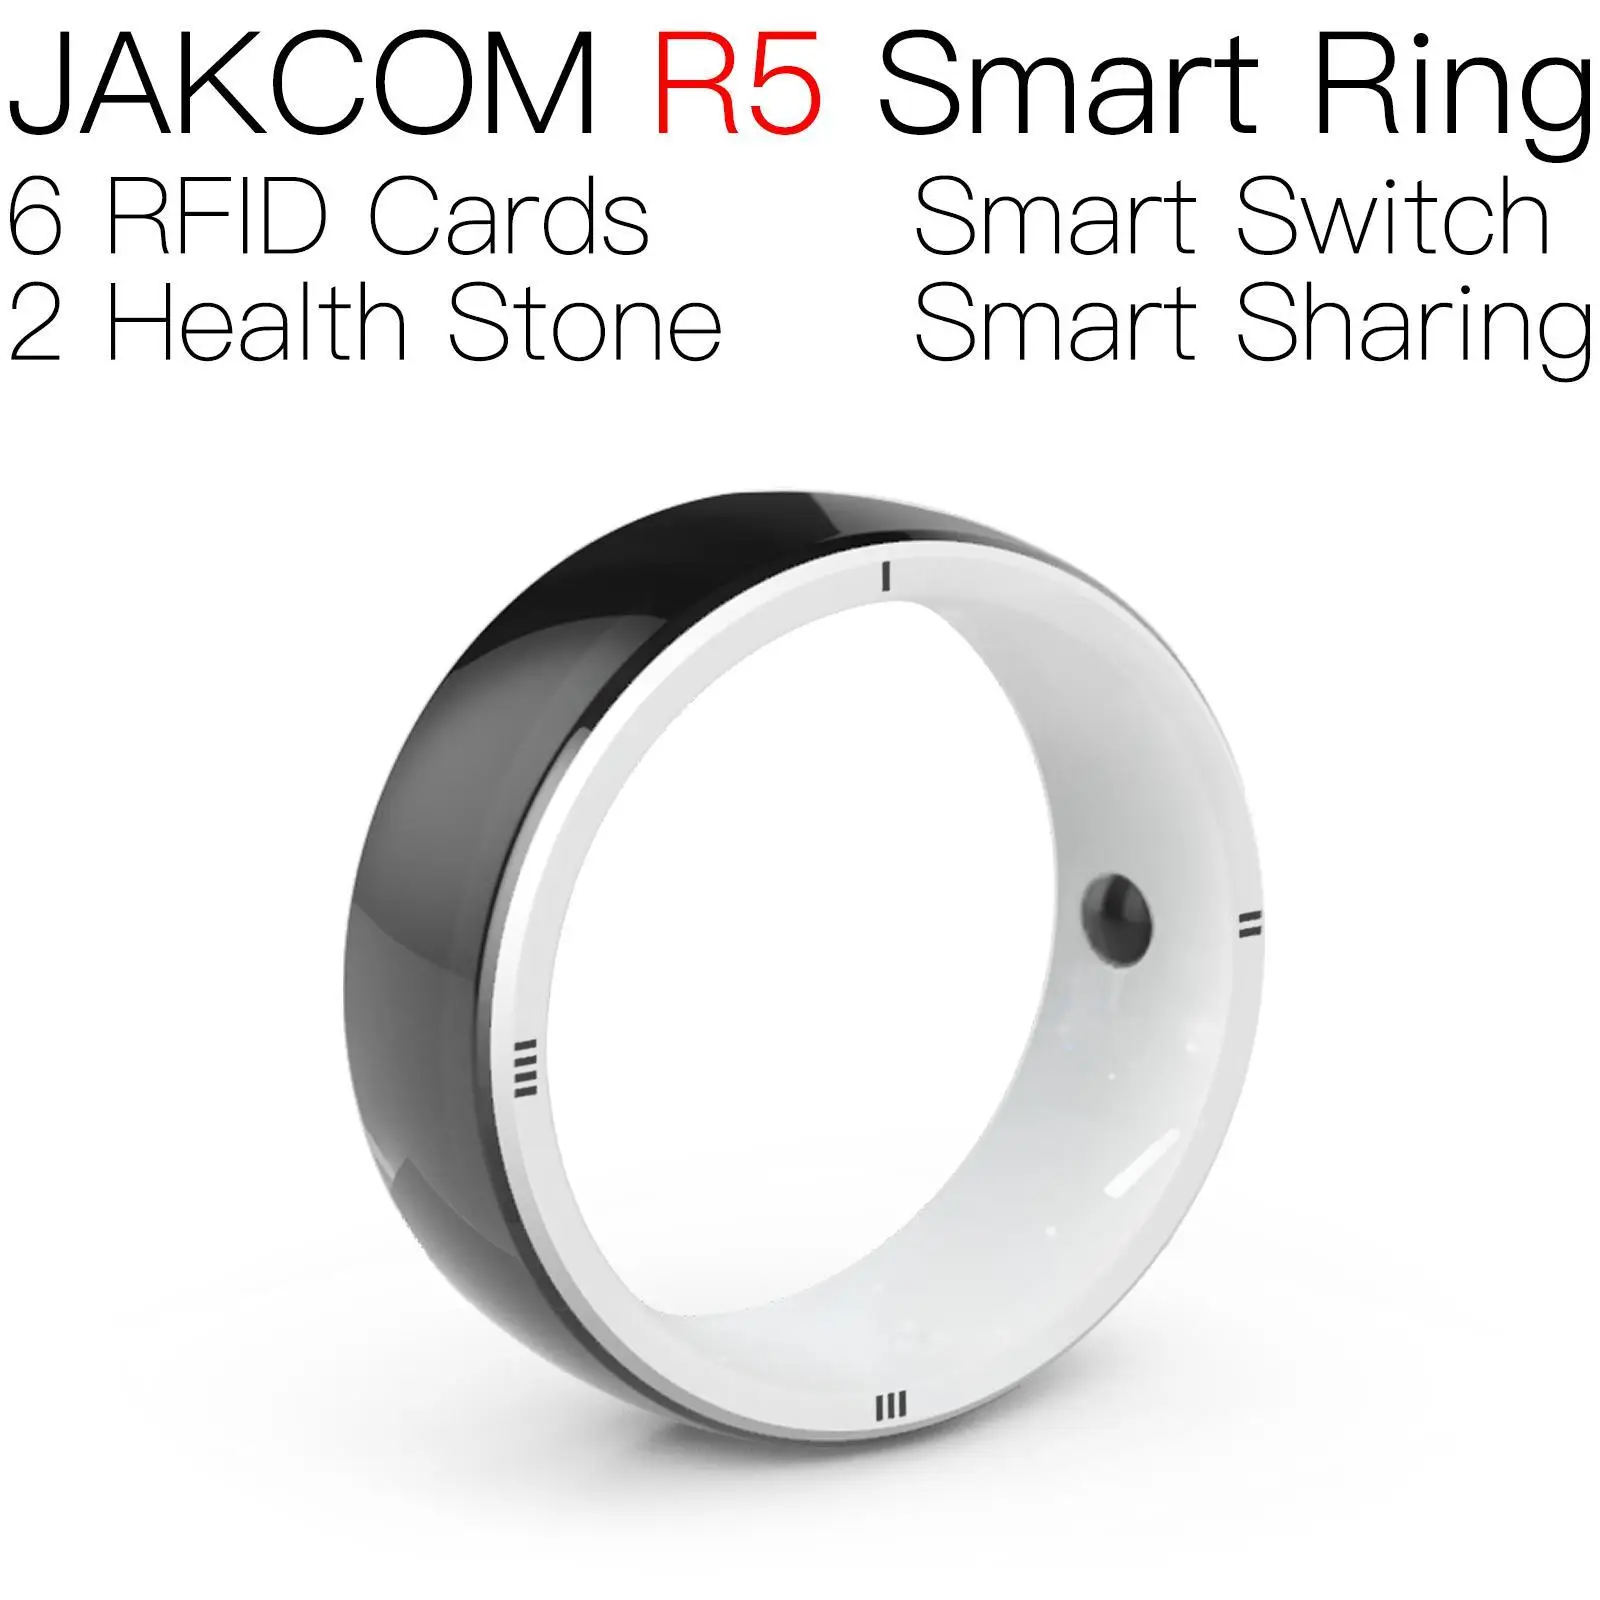 

Умное кольцо JAKCOM R5, новый продукт как iso 15693, устройство для удаления микрочипа carte magполяй, nfc-метка, гибкие потоковые горизонты